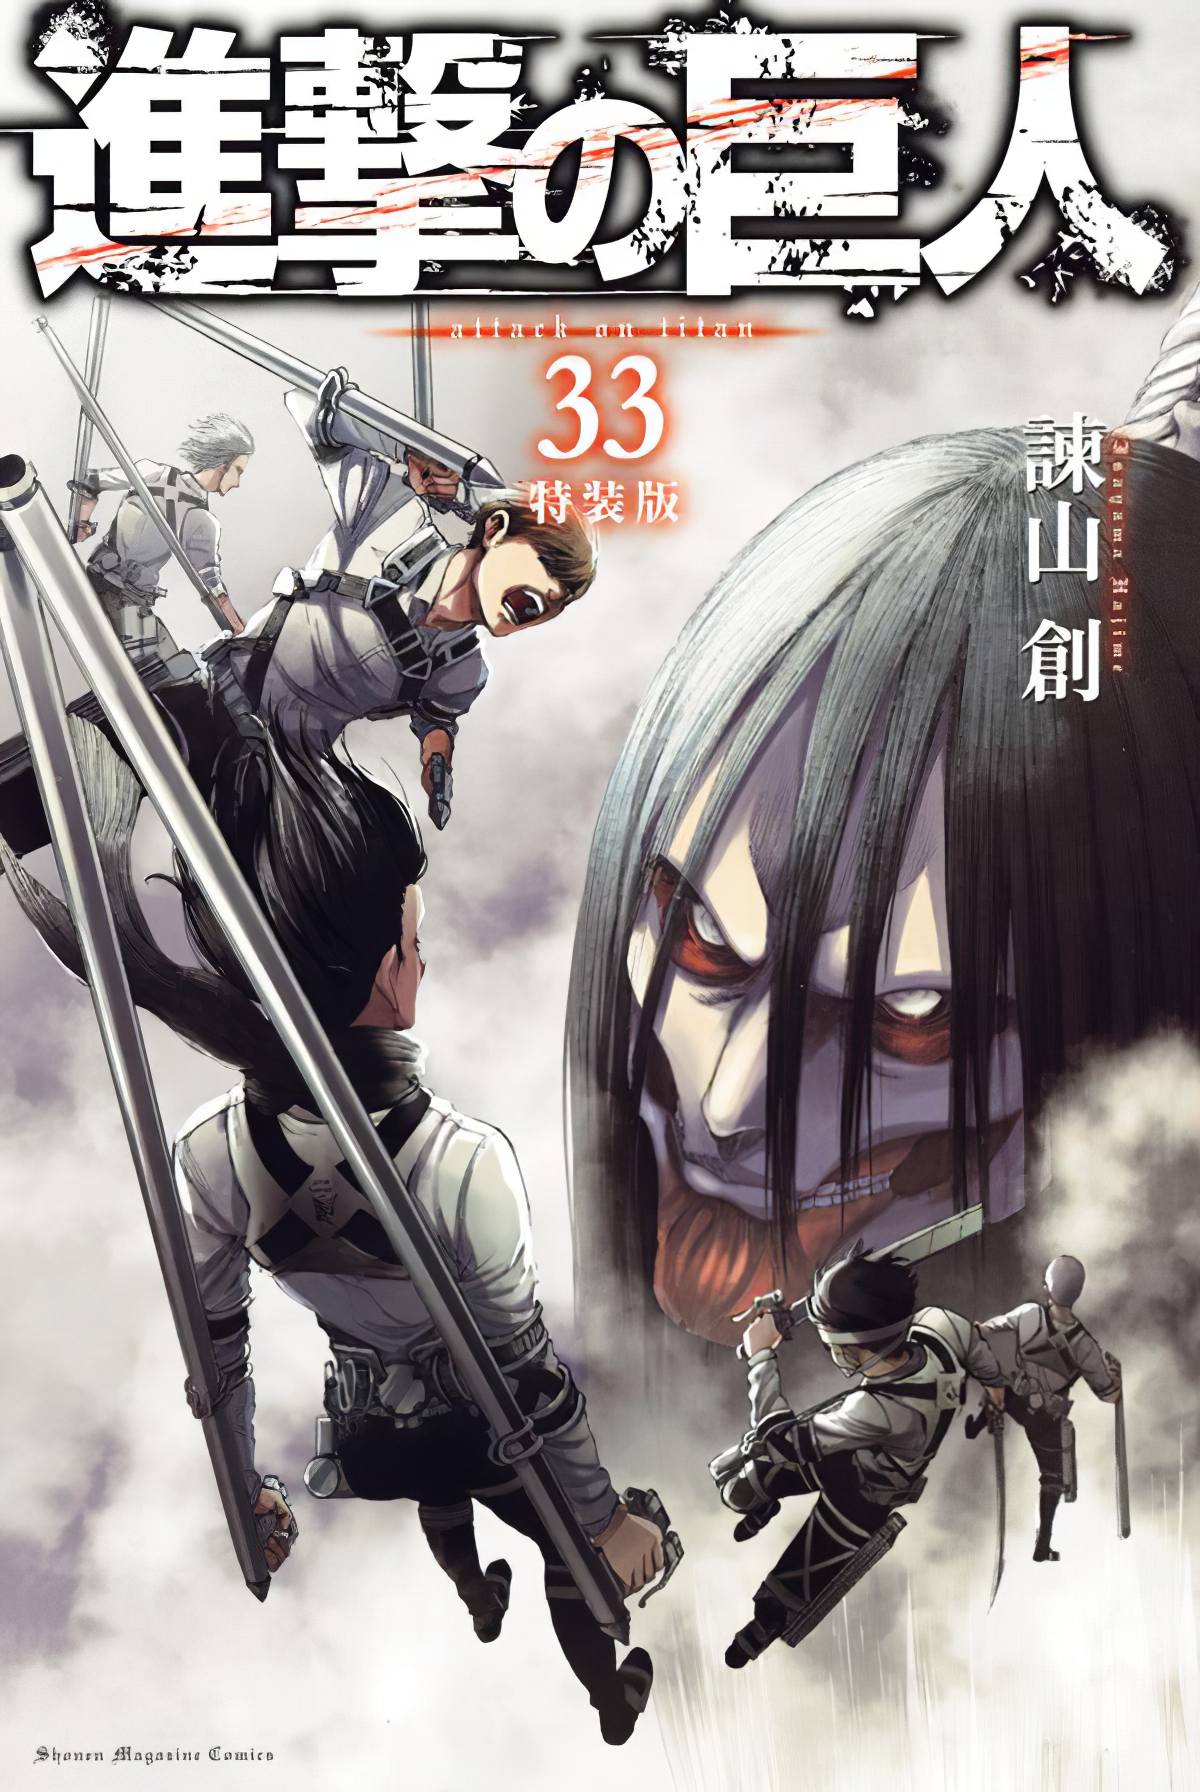 El manga Shingeki no Kyojin revela la portada de su volumen 33 — Kudasai